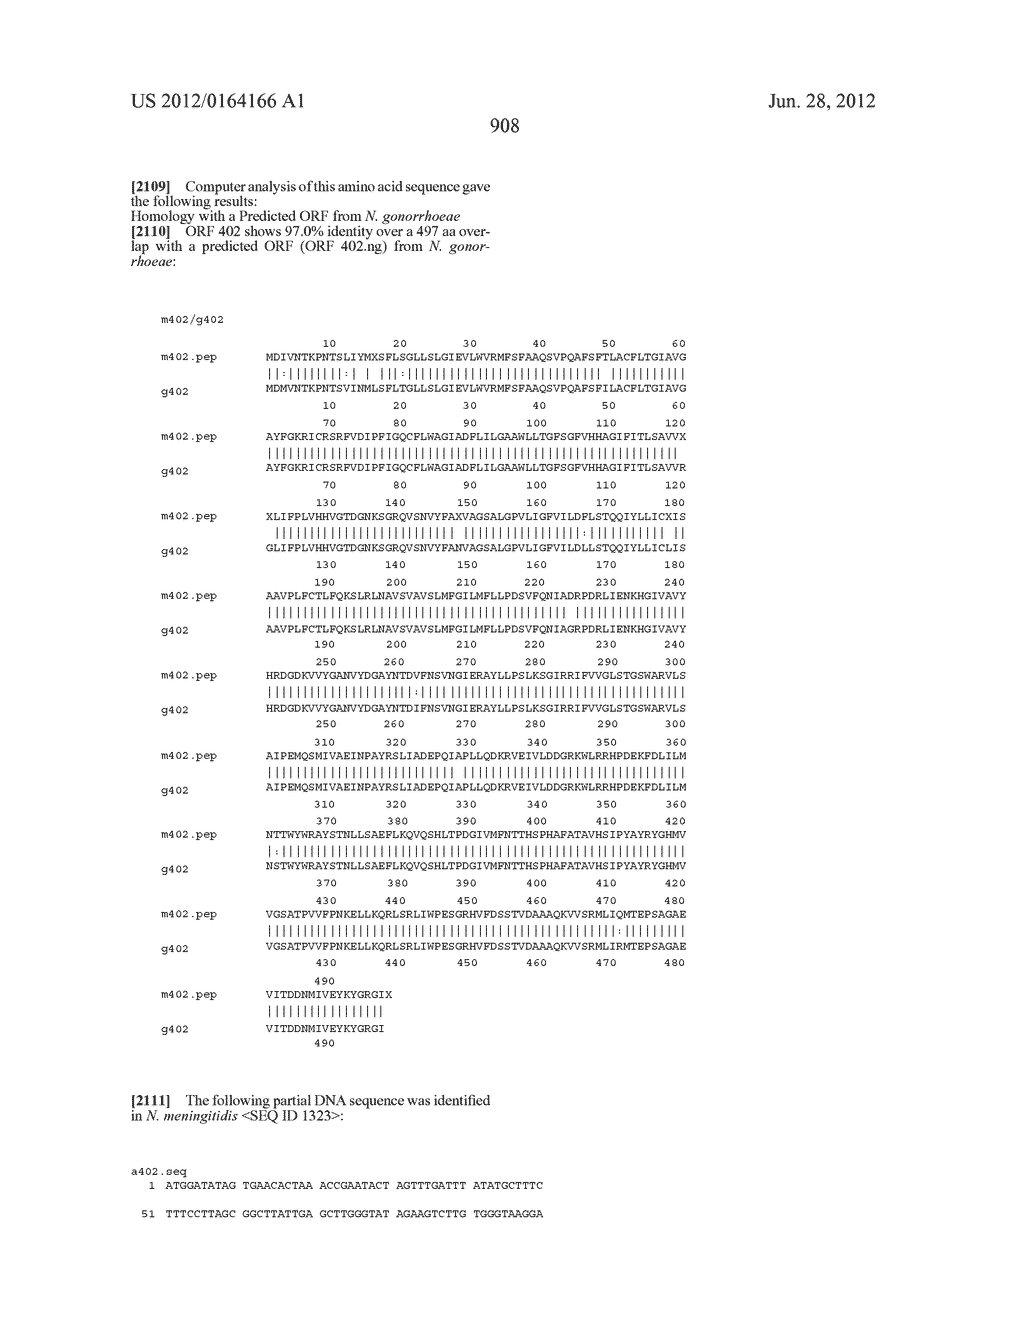 NEISSERIA MENINGITIDIS ANTIGENS AND COMPOSITIONS - diagram, schematic, and image 940